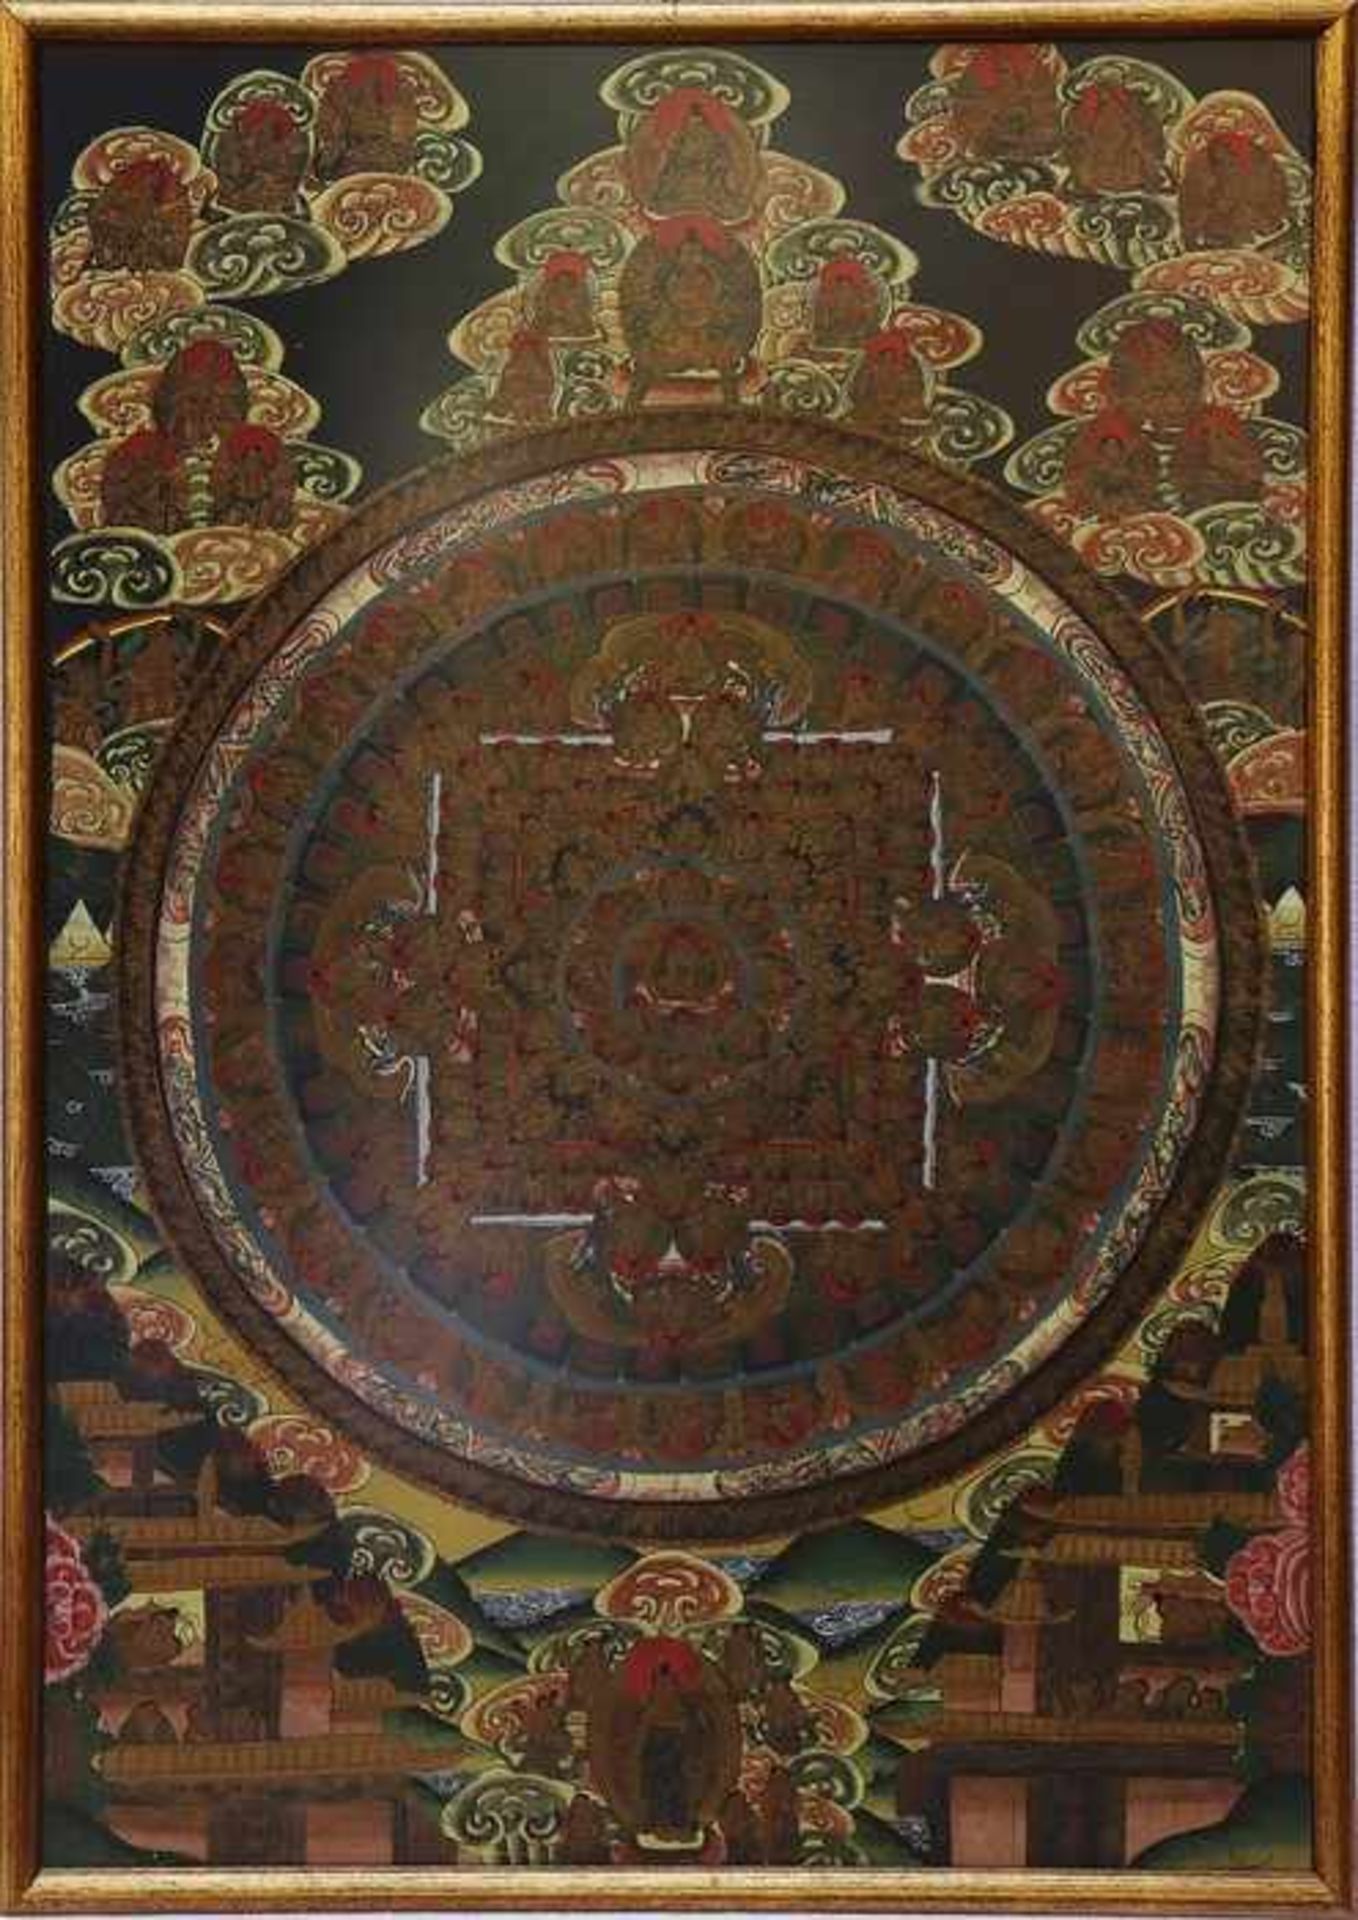 Thanka20.Jh., Tibet, Mischtechnik auf Papier, blau/gelbe Farbpalette, Mandala-Kreis umgeben v. - Bild 2 aus 2